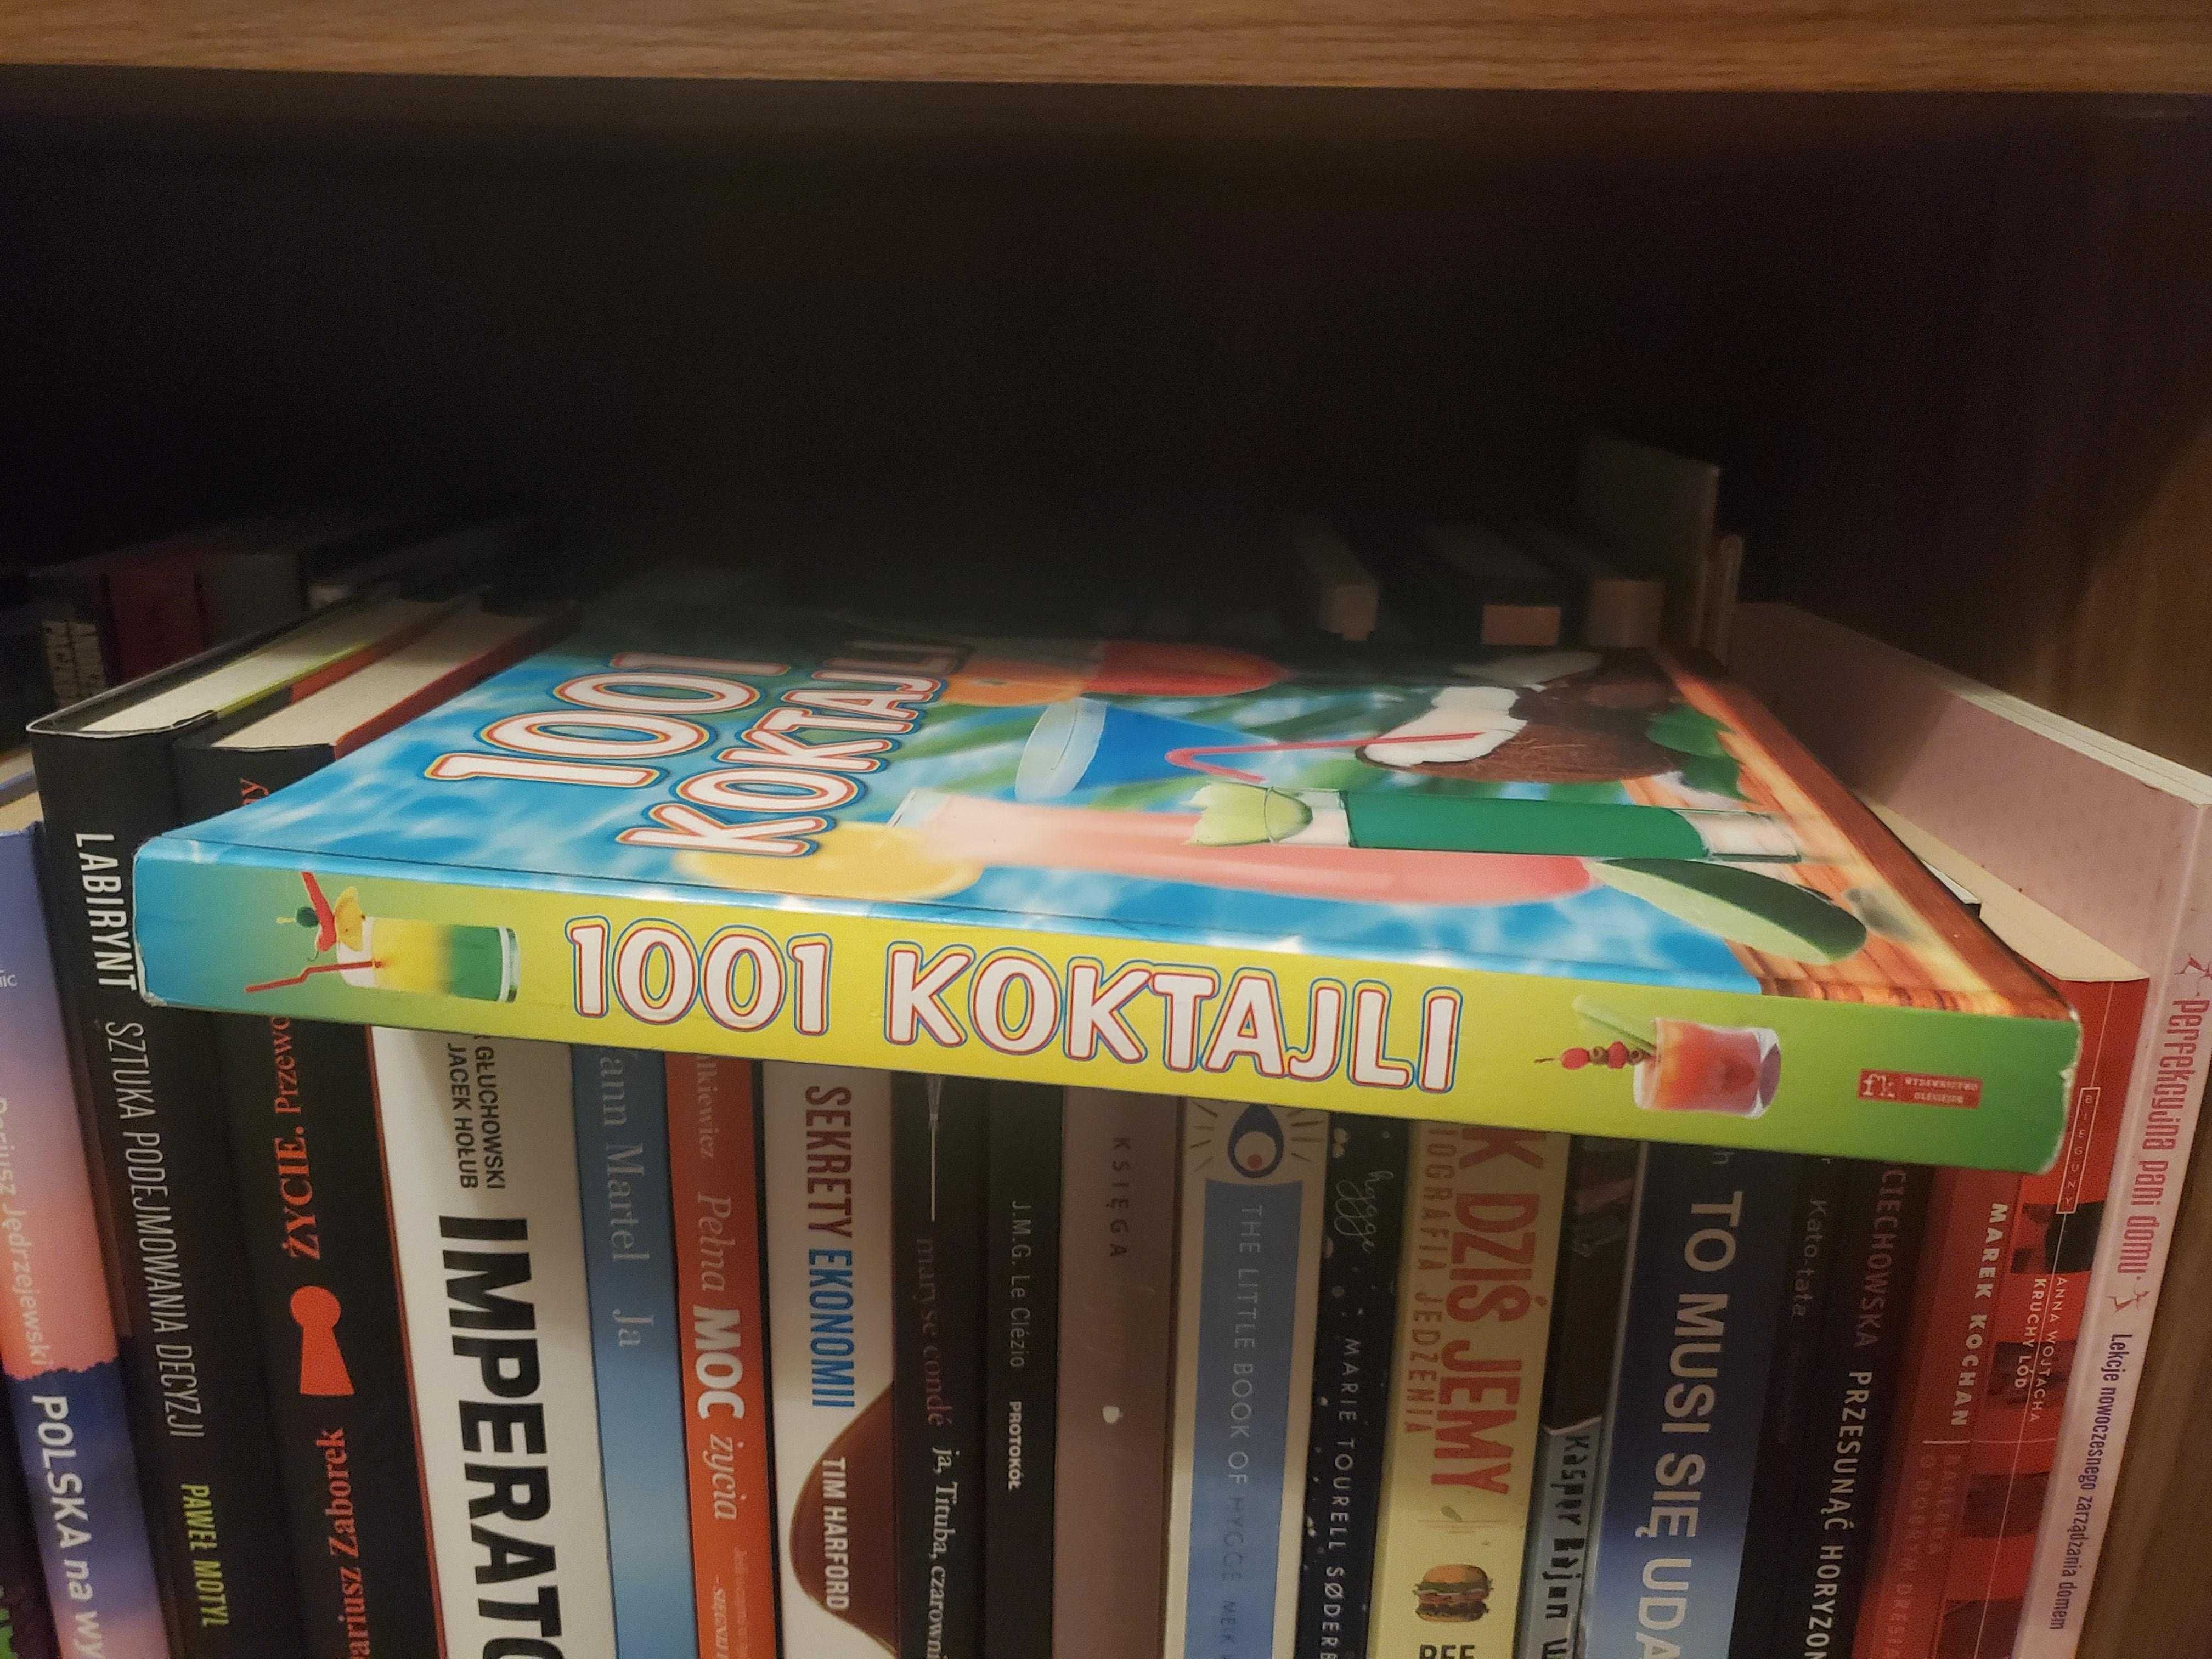 1001 koktajli przepisy książka